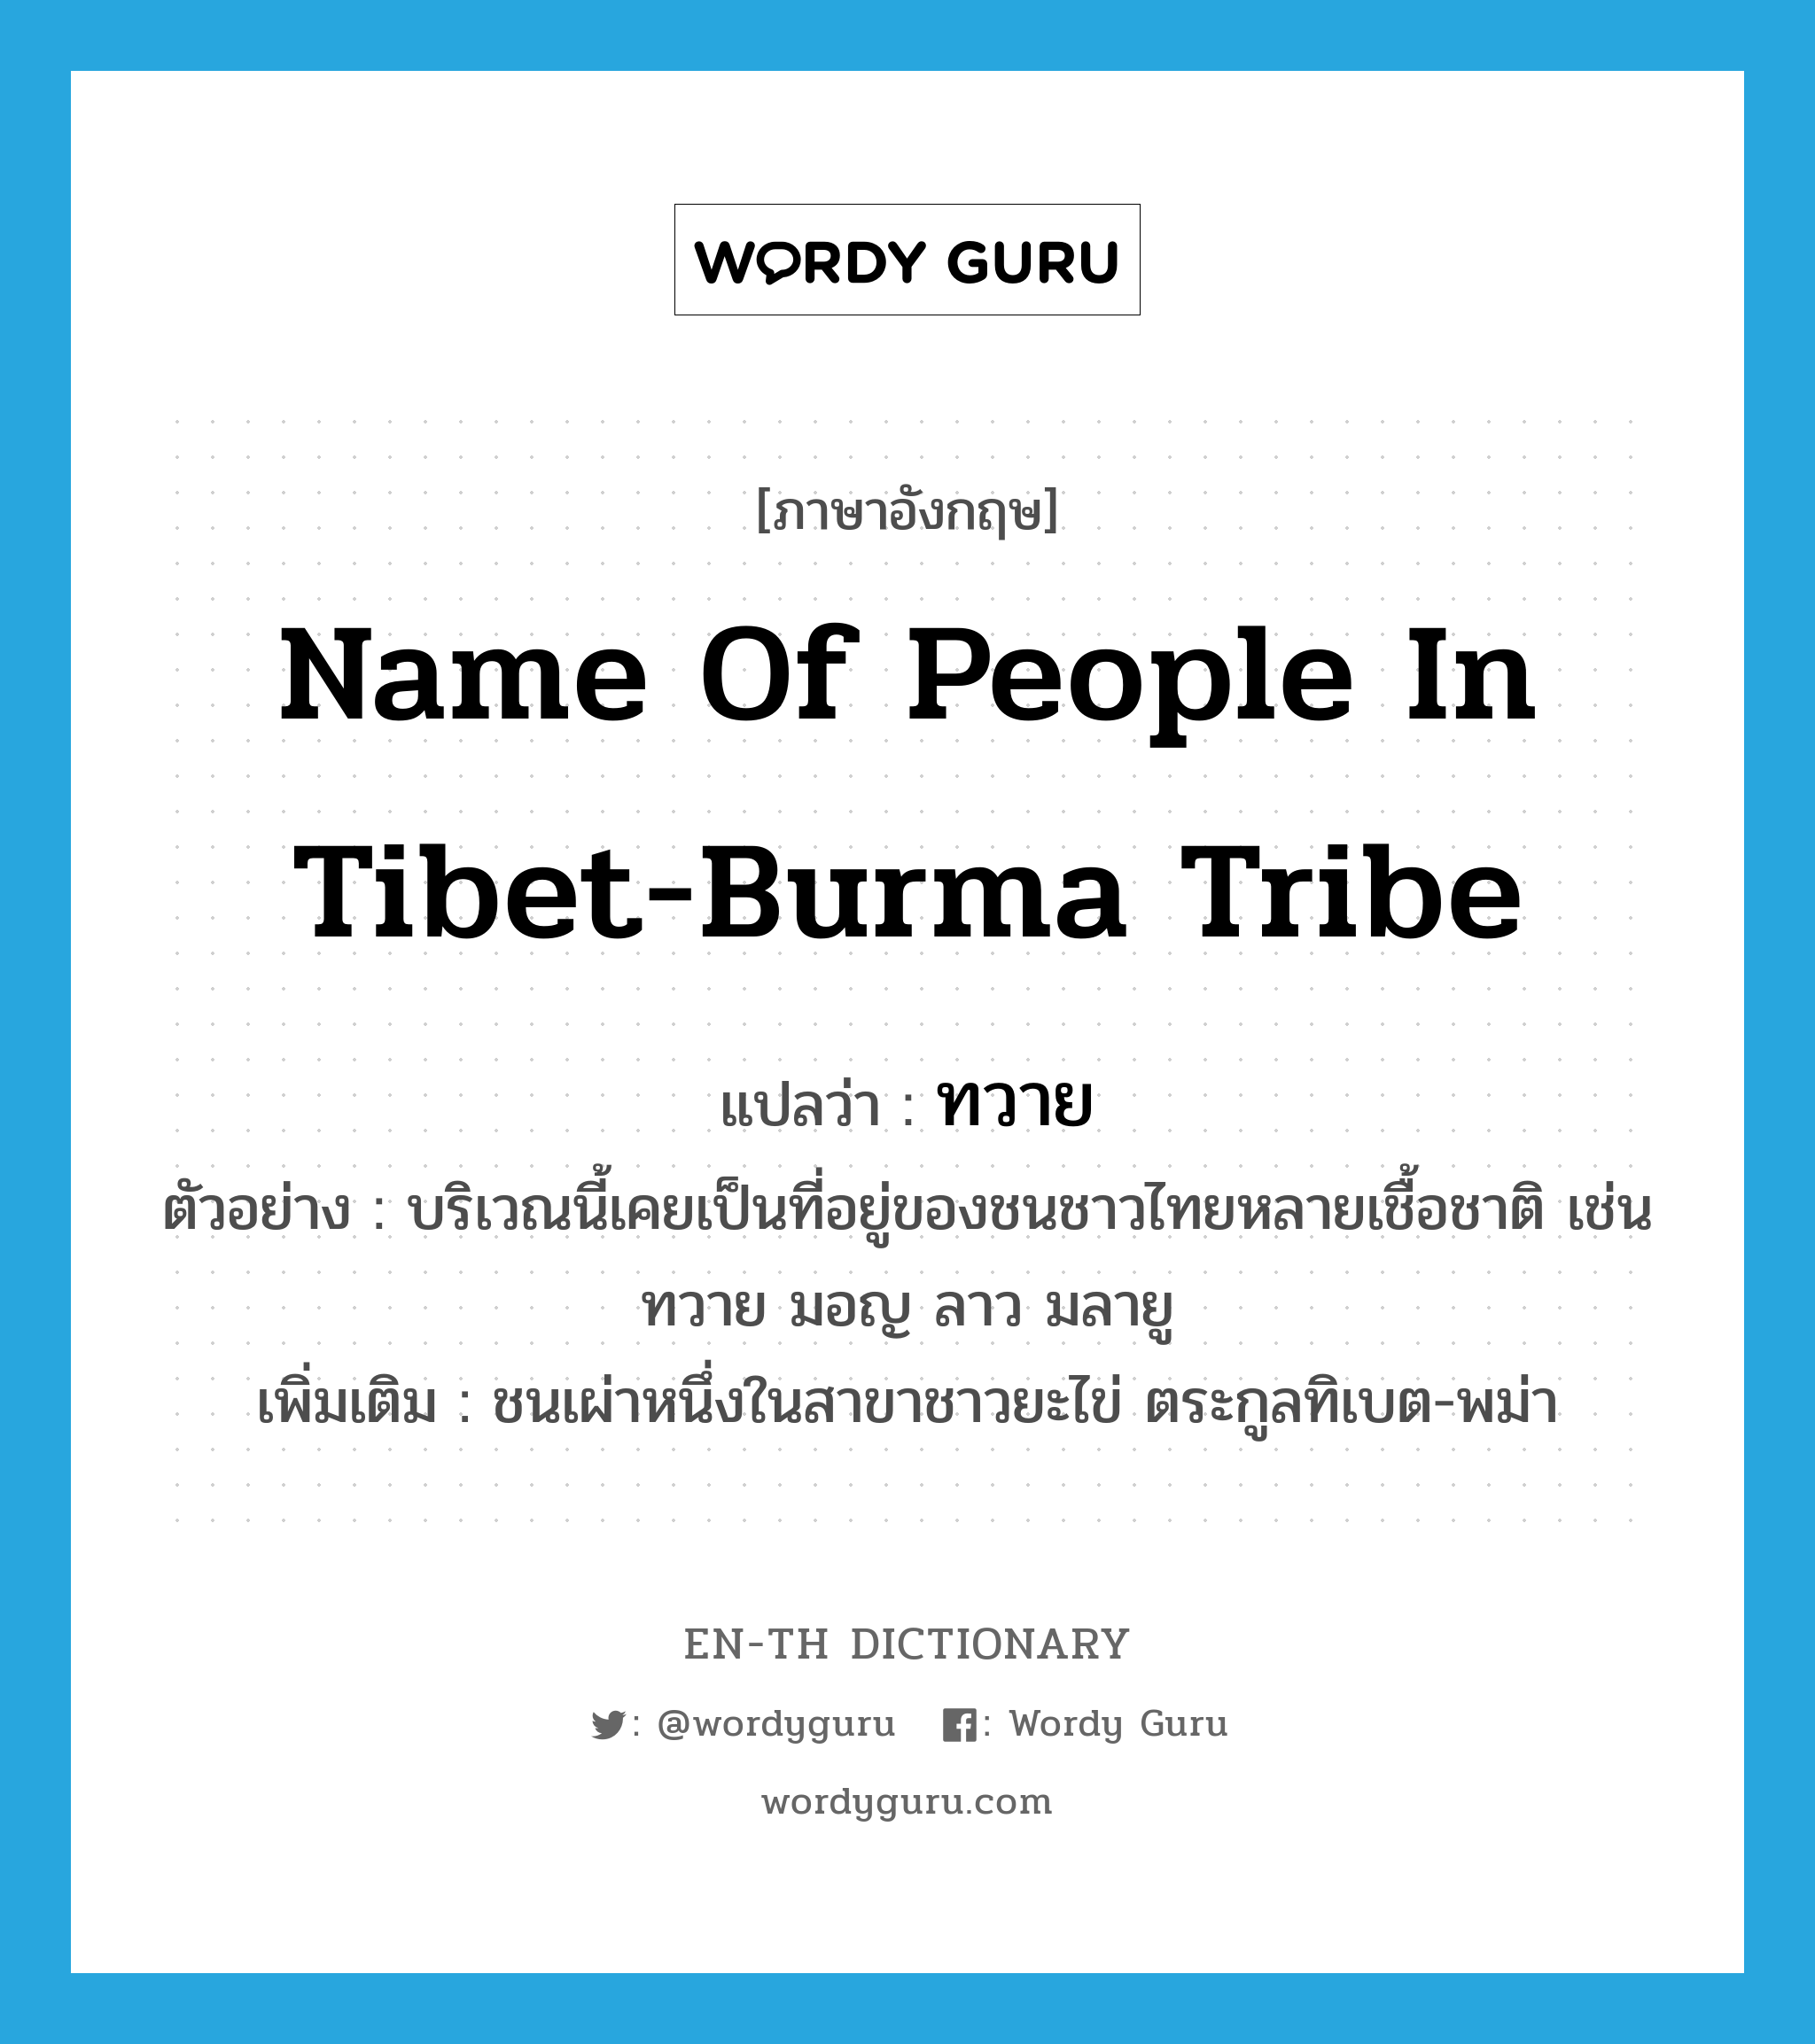 ทวาย ภาษาอังกฤษ?, คำศัพท์ภาษาอังกฤษ ทวาย แปลว่า name of people in Tibet-Burma tribe ประเภท N ตัวอย่าง บริเวณนี้เคยเป็นที่อยู่ของชนชาวไทยหลายเชื้อชาติ เช่น ทวาย มอญ ลาว มลายู เพิ่มเติม ชนเผ่าหนึ่งในสาขาชาวยะไข่ ตระกูลทิเบต-พม่า หมวด N